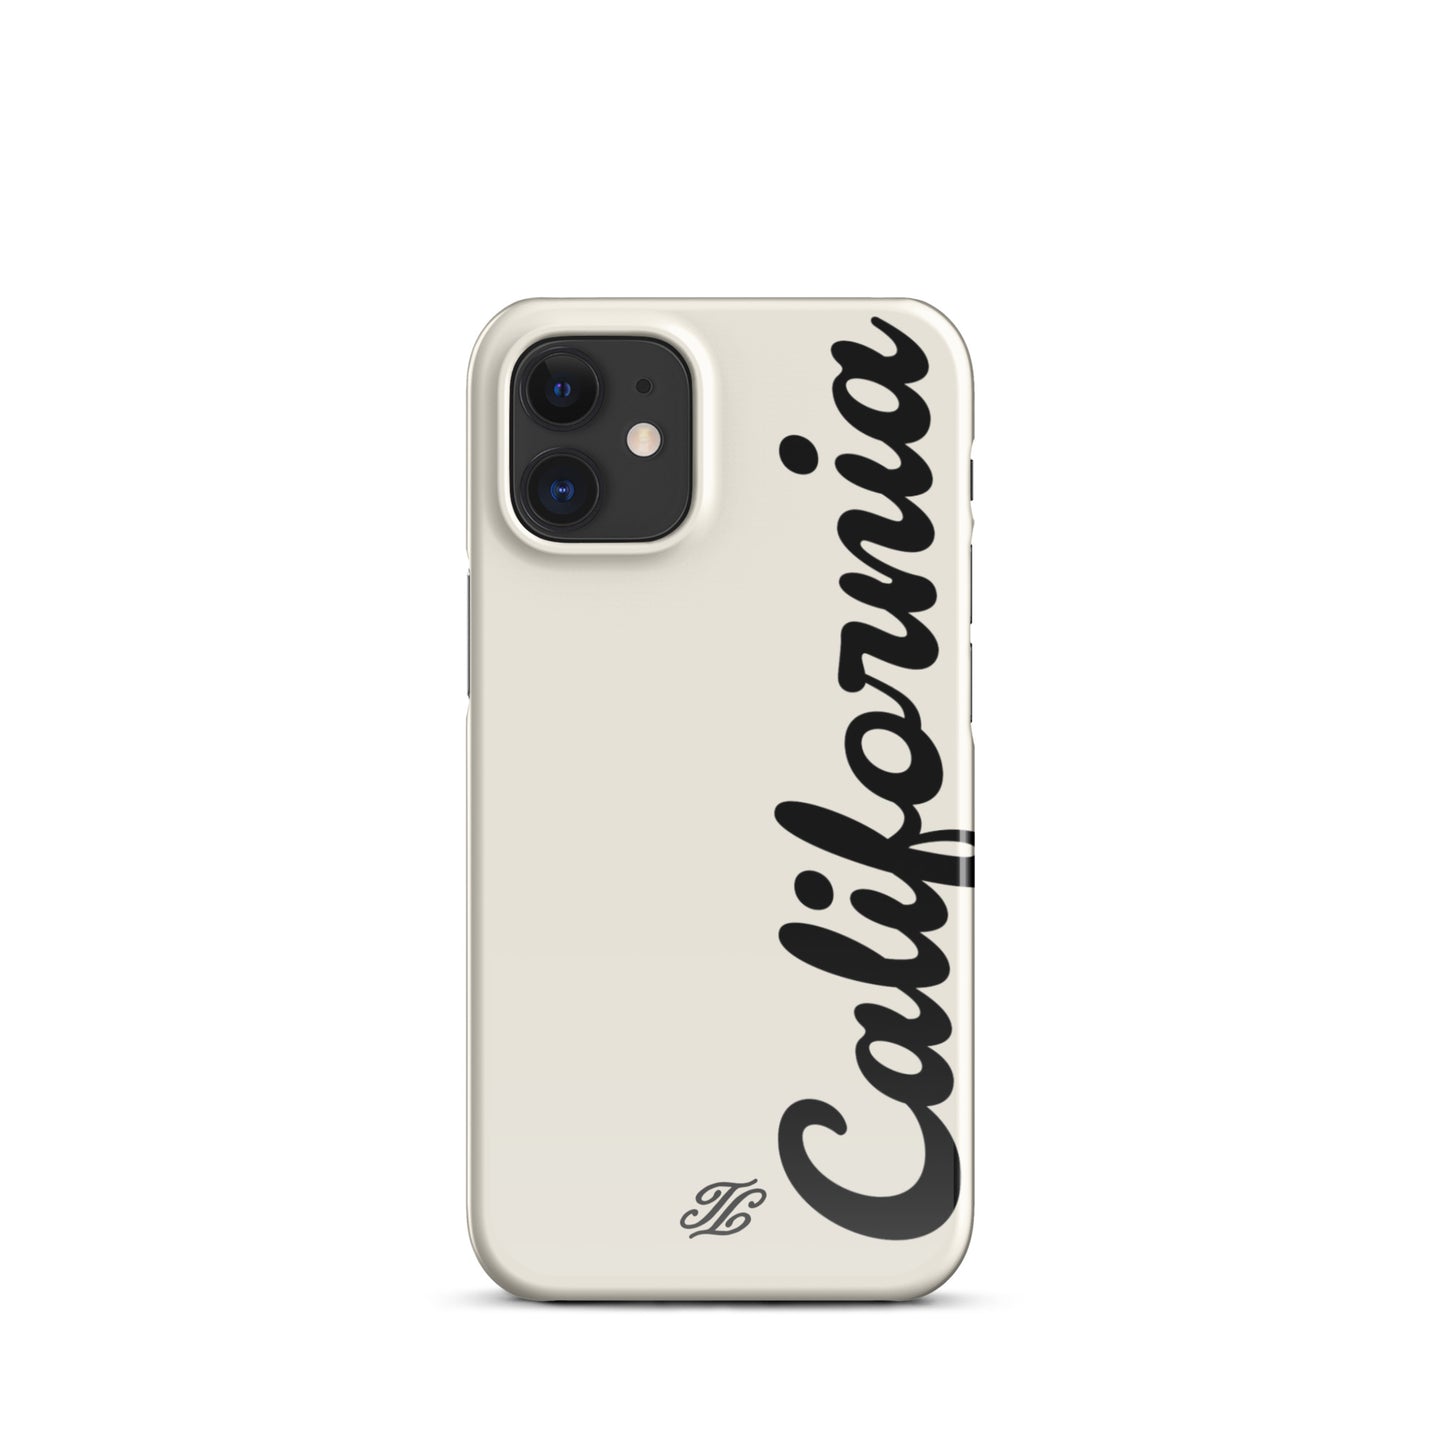 California iPhone® case